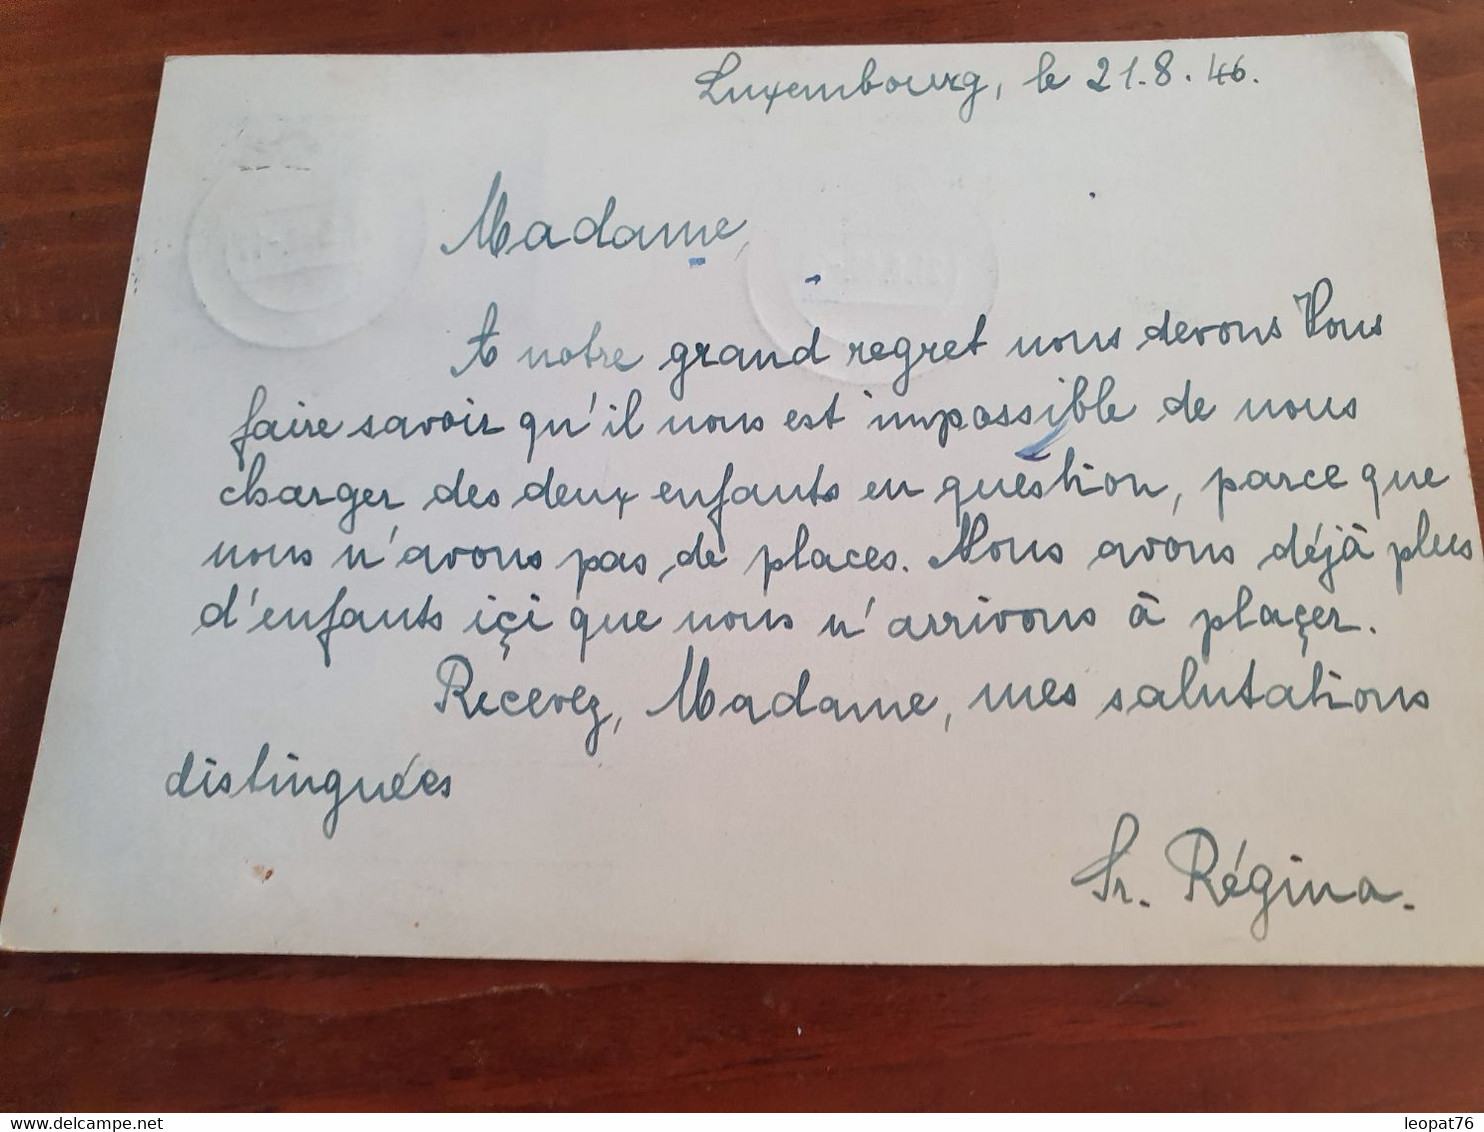 Luxembourg - Entier Postal + Complément De Luxembourg Pour La France En 1946 - M 86 - Stamped Stationery